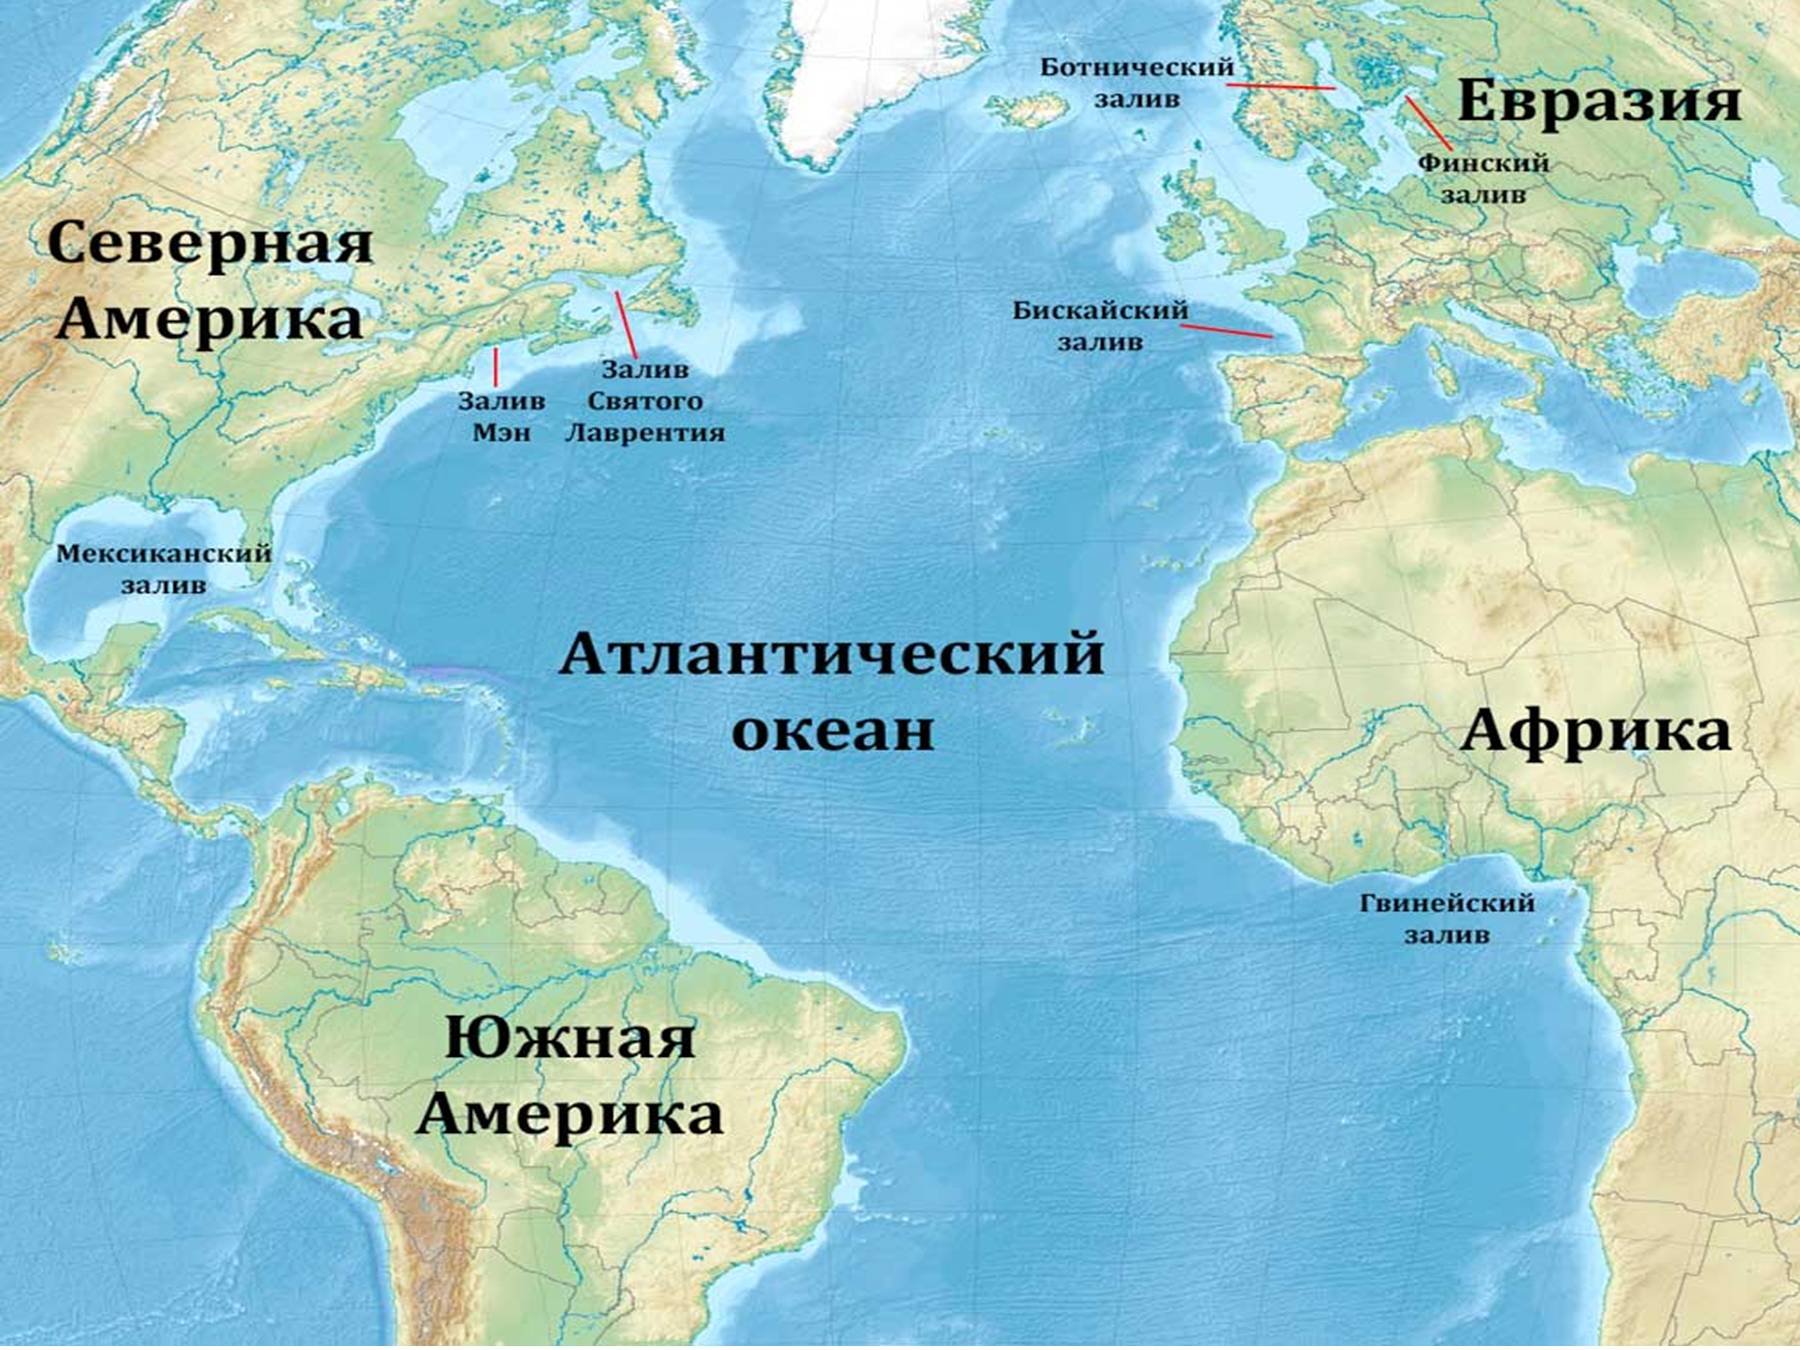 Части тихого океана заливы. Расположение Атлантического океана на карте. Карта Атлантического океана с морями заливами и проливами. Атлантический океан на карте. Атлантический акеан на карте.